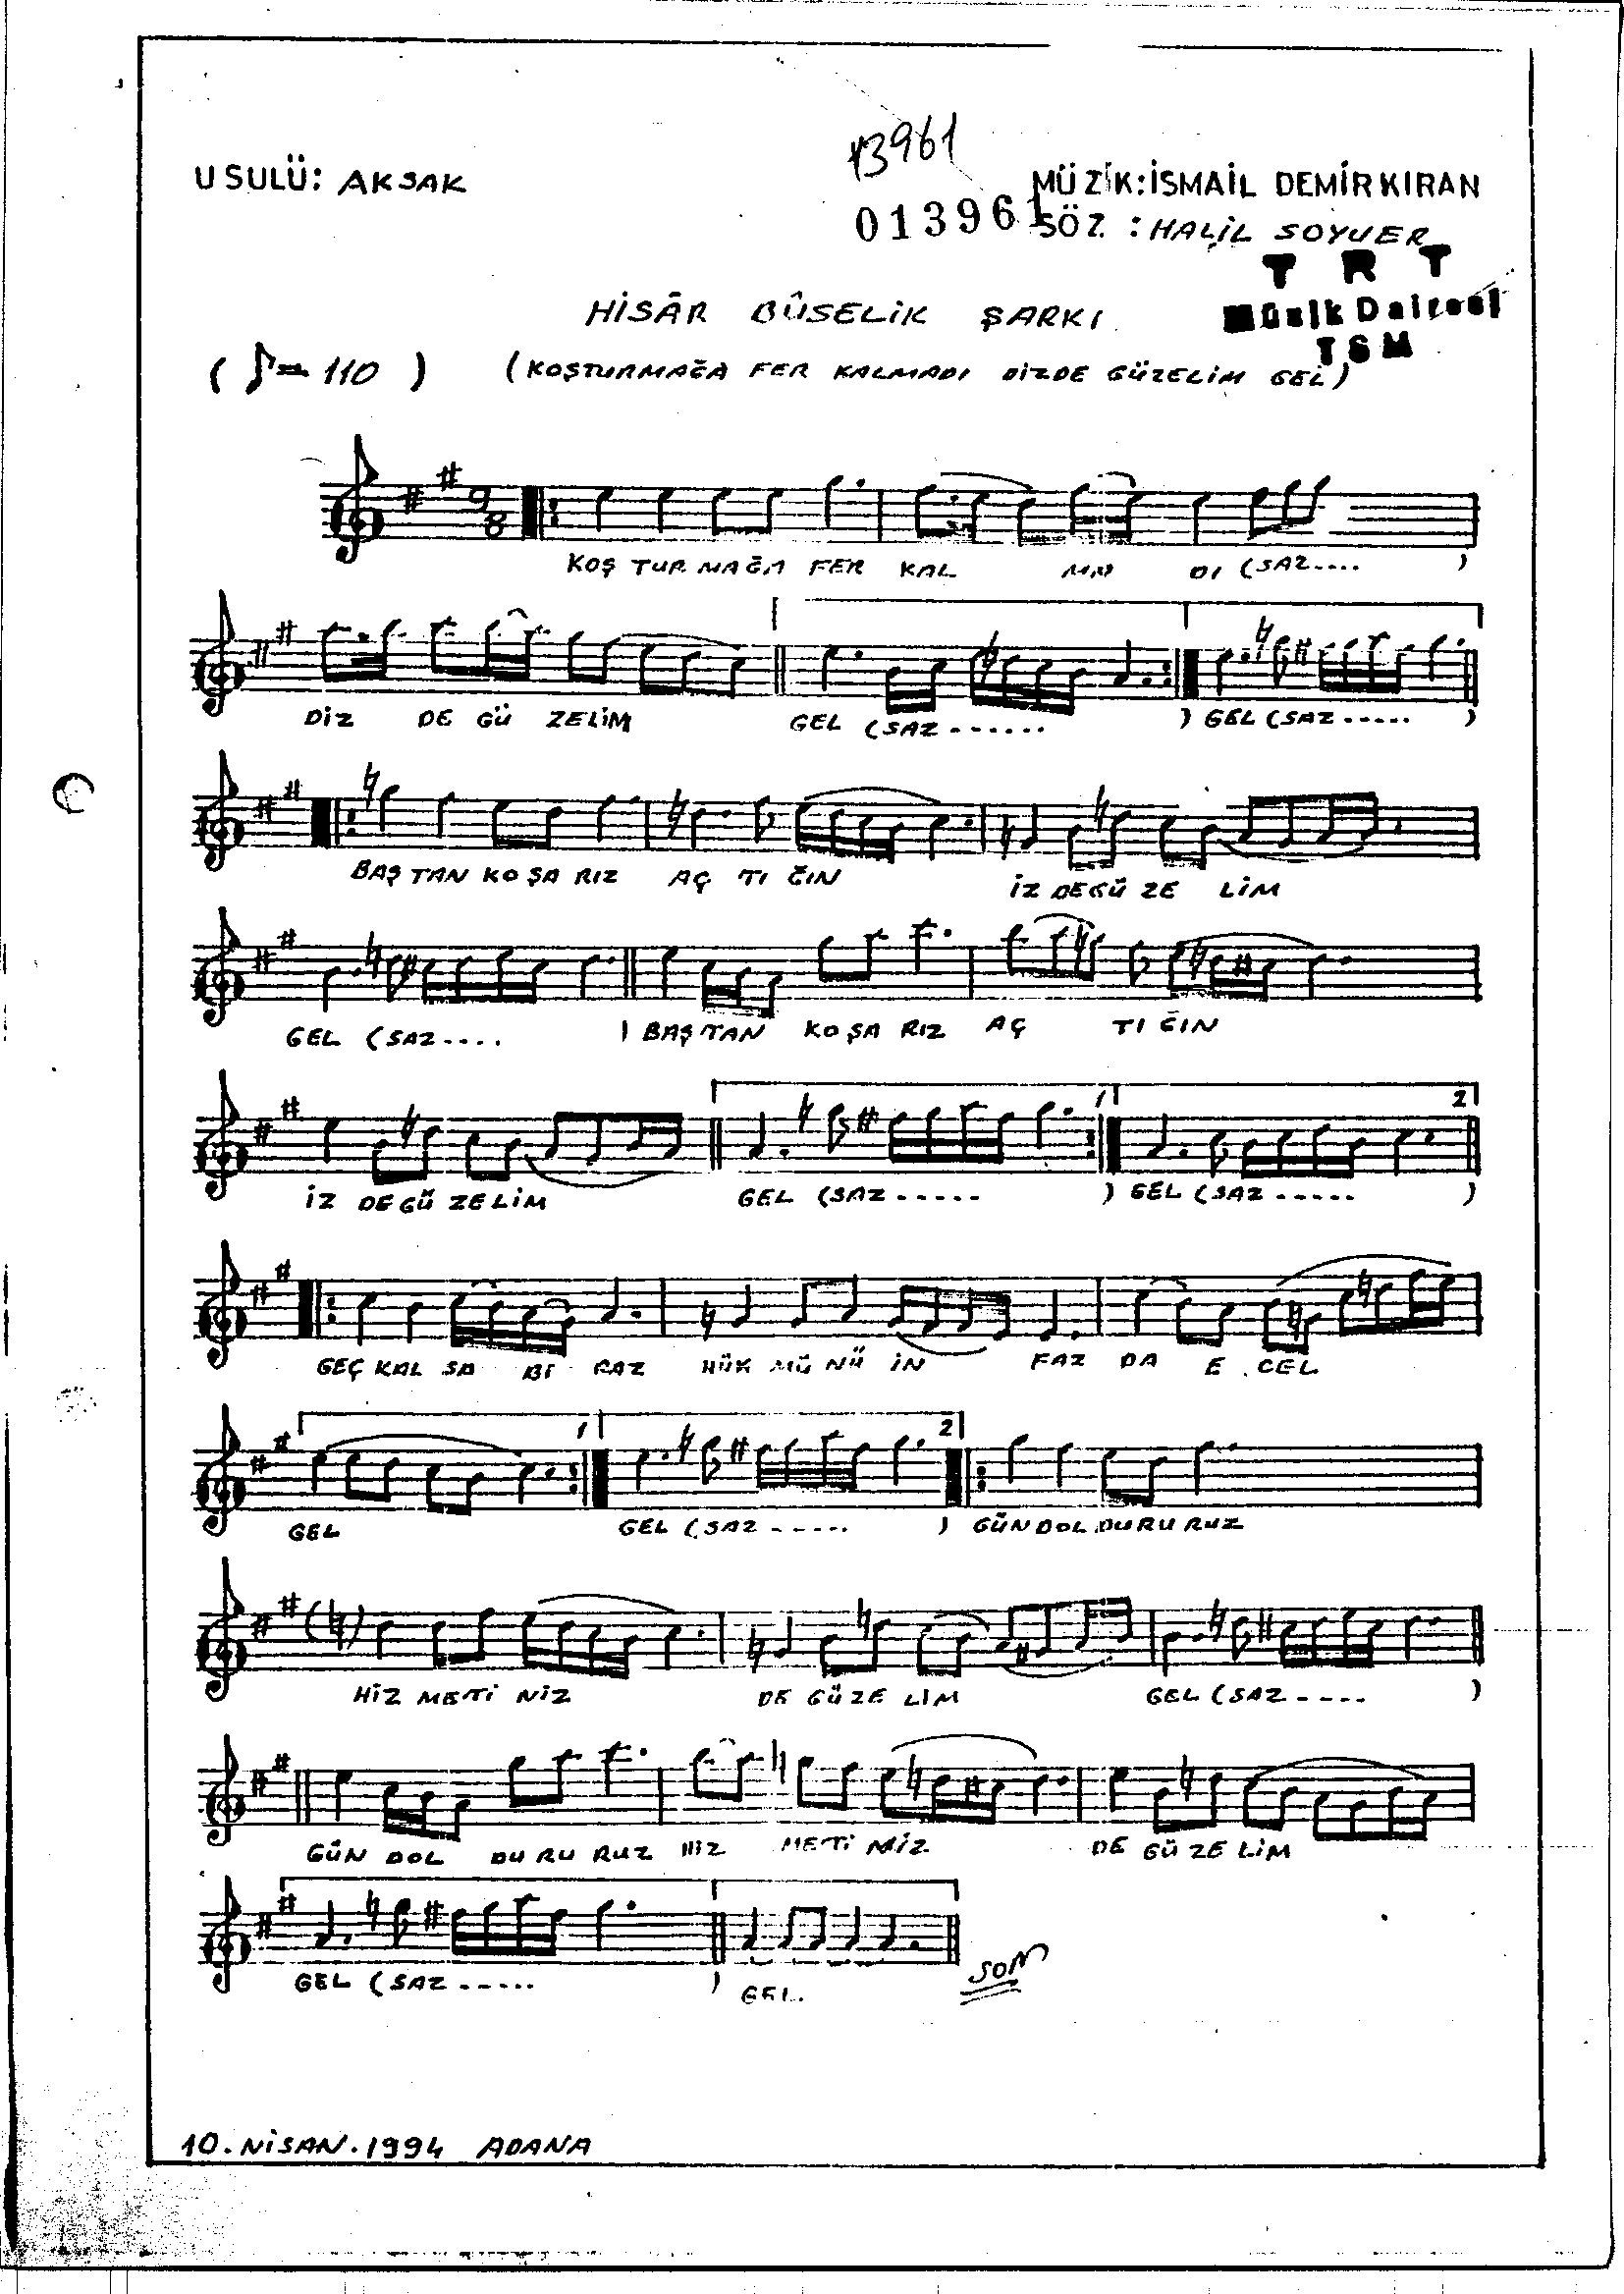 Hisâr-Bûselik - Şarkı - İsmail Demirkıran - Sayfa 1